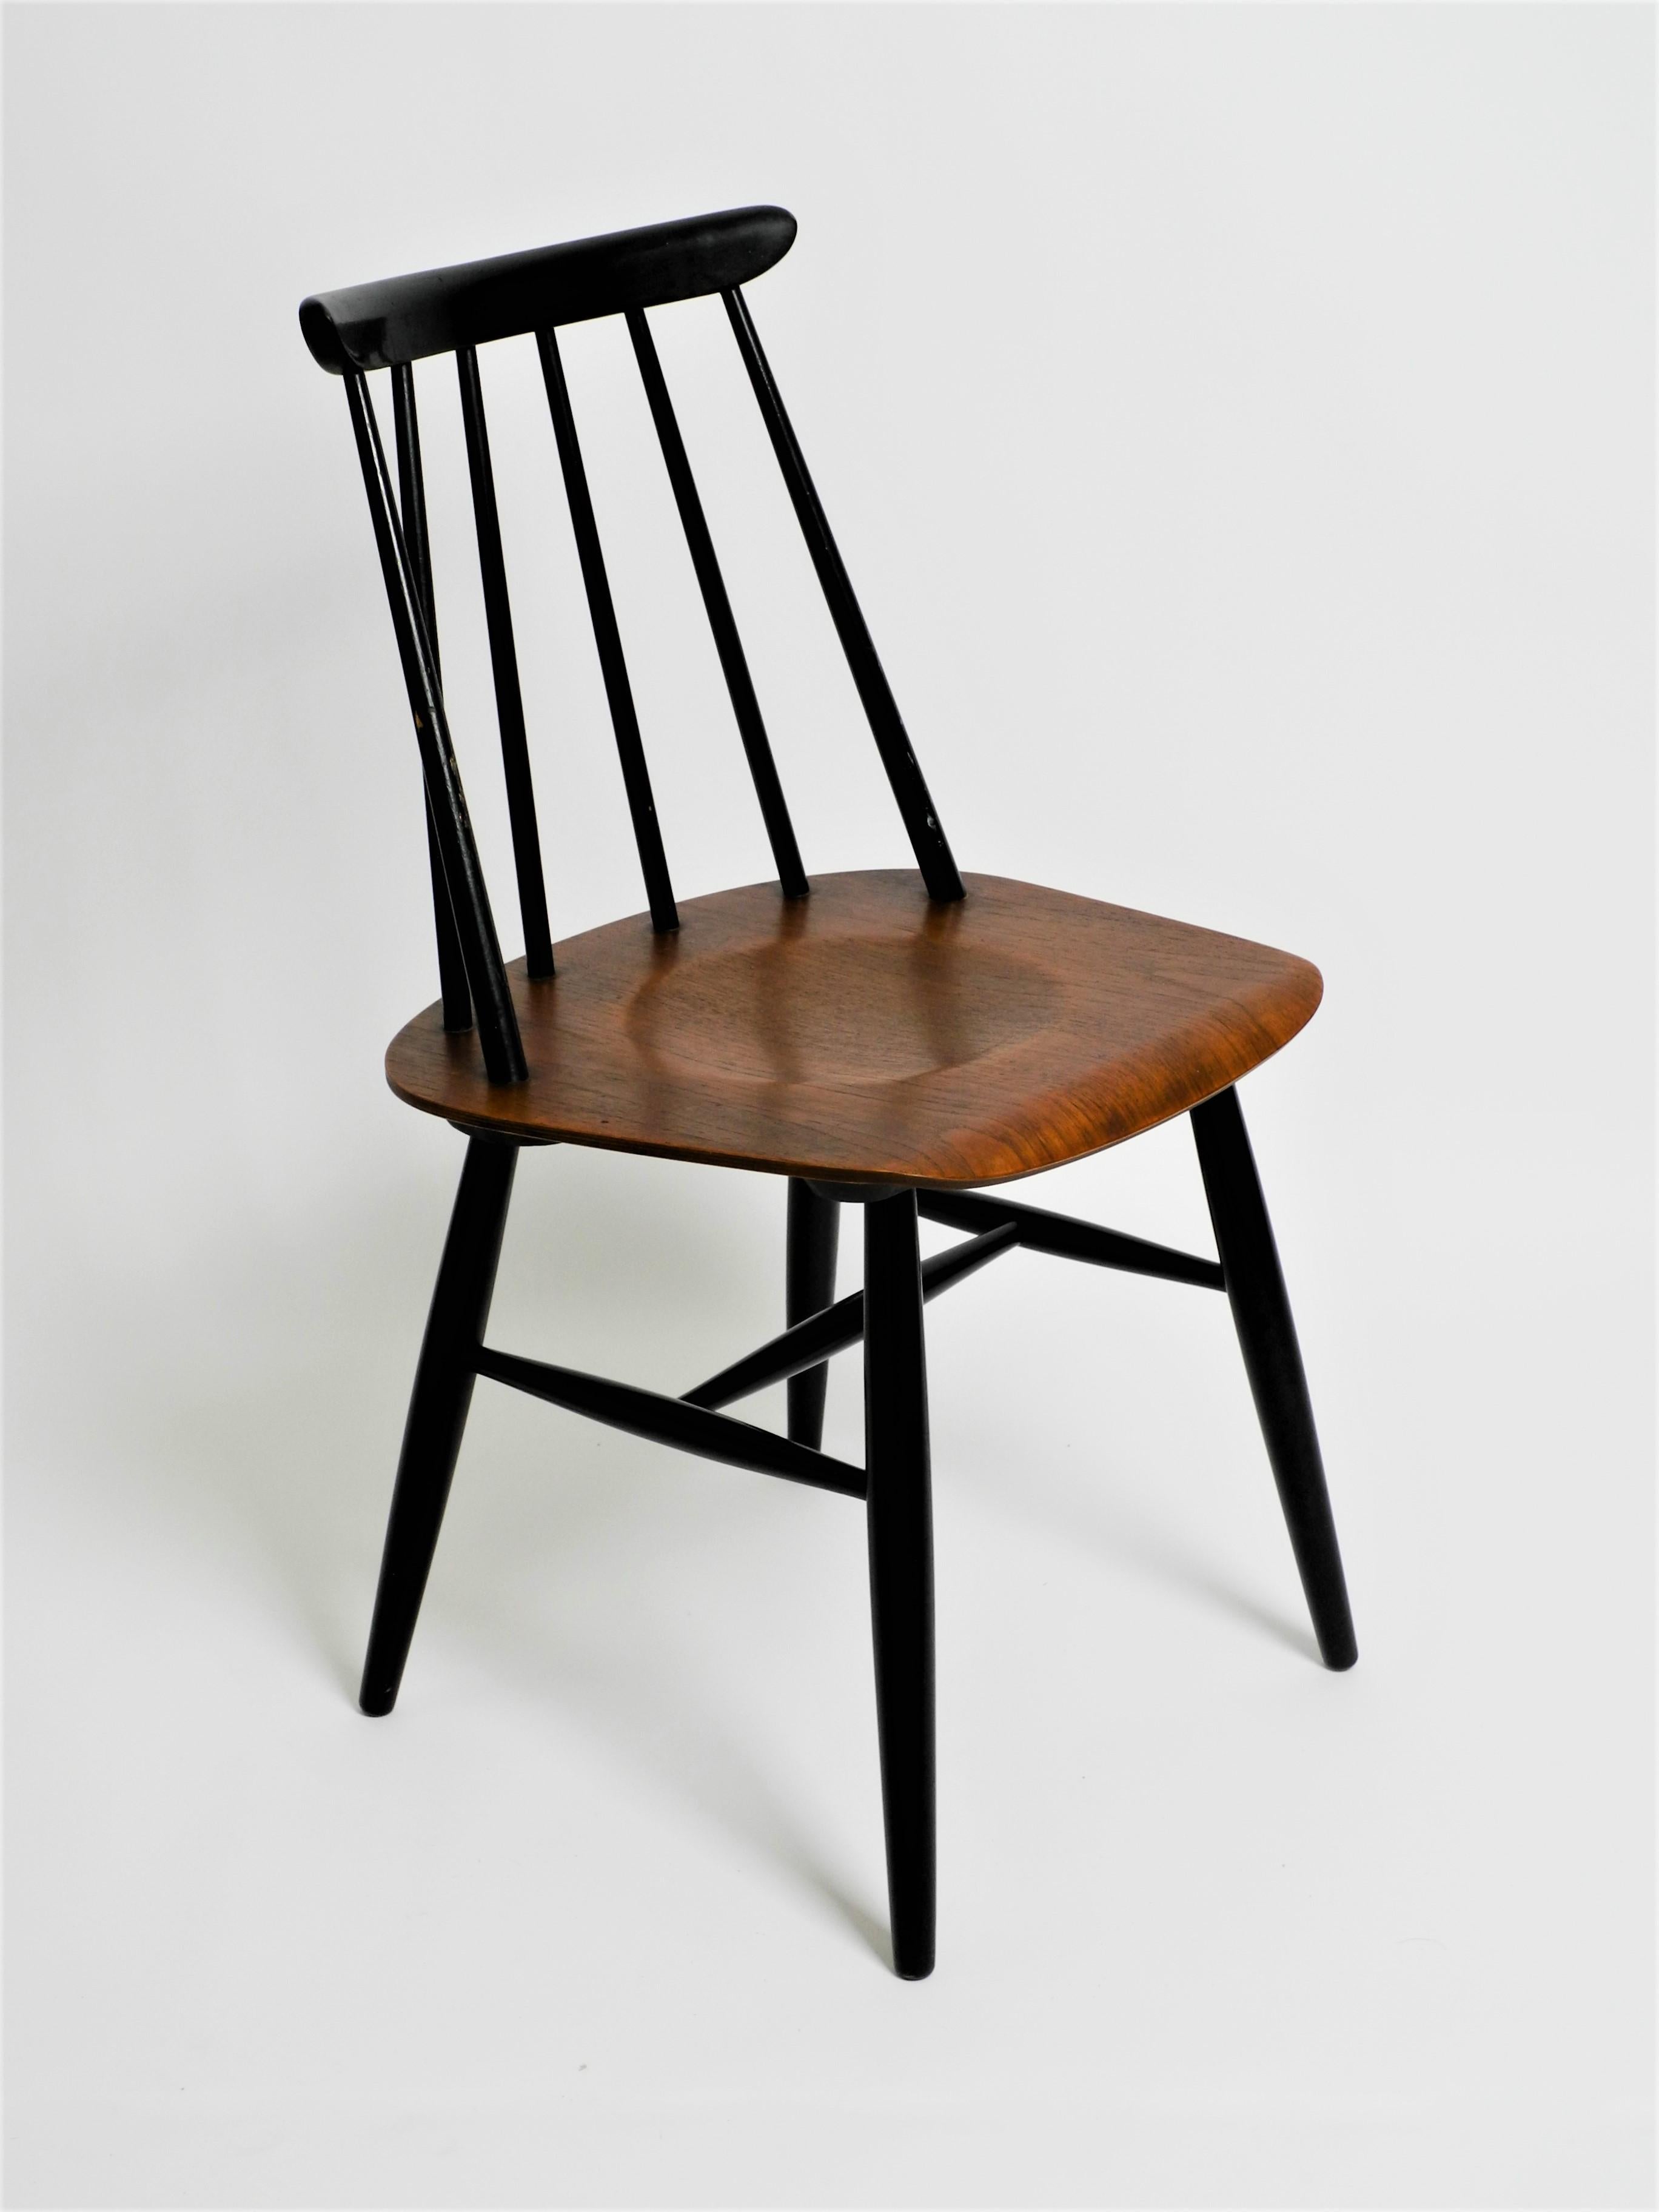 Chaise de salle à manger Fanett originale d'Ilmari Tapiovaara pour Asko. Des années 60. Avec l'étiquette du fabricant sur le fond.

La chaise est dans un bel état vintage. Il présente des signes d'usure liés à l'âge sur l'assise, le dossier et les